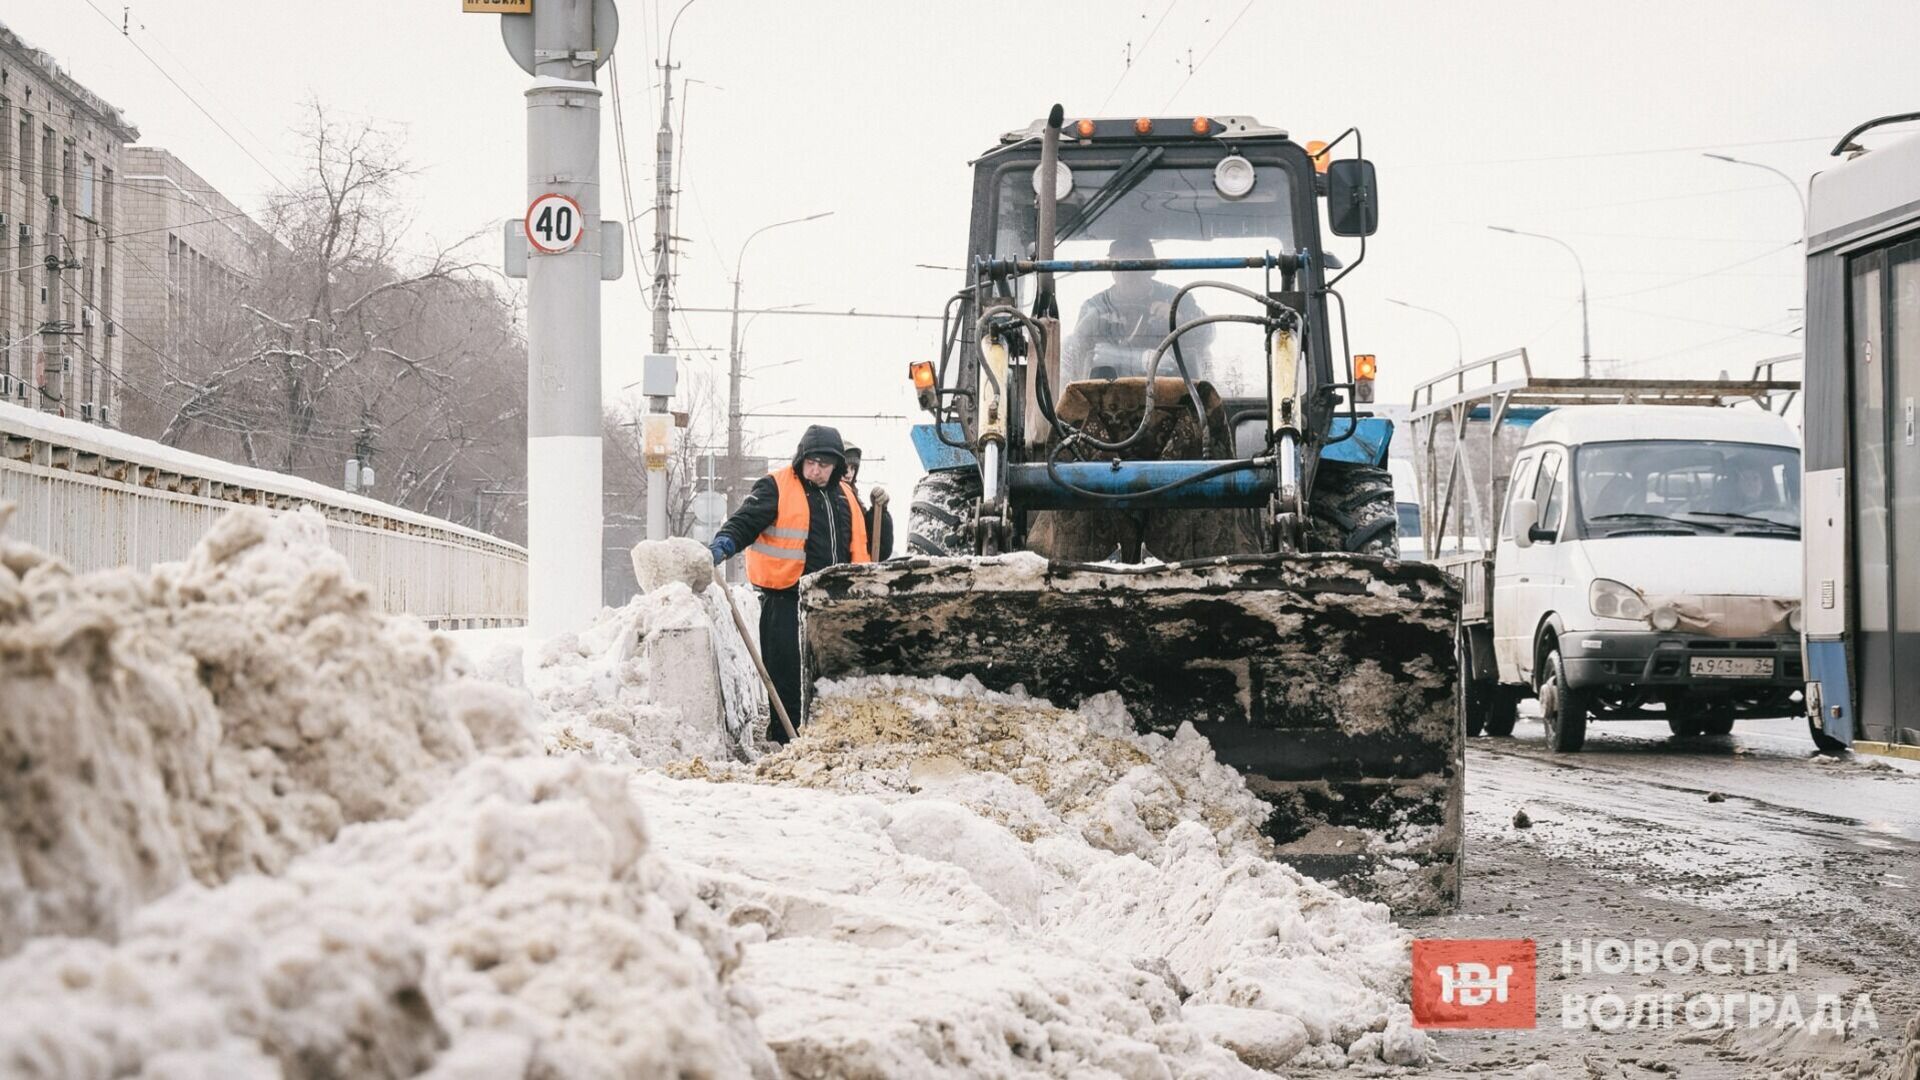 300 кубометров снега вывезли с дорог Волгограда после мощного снегопада